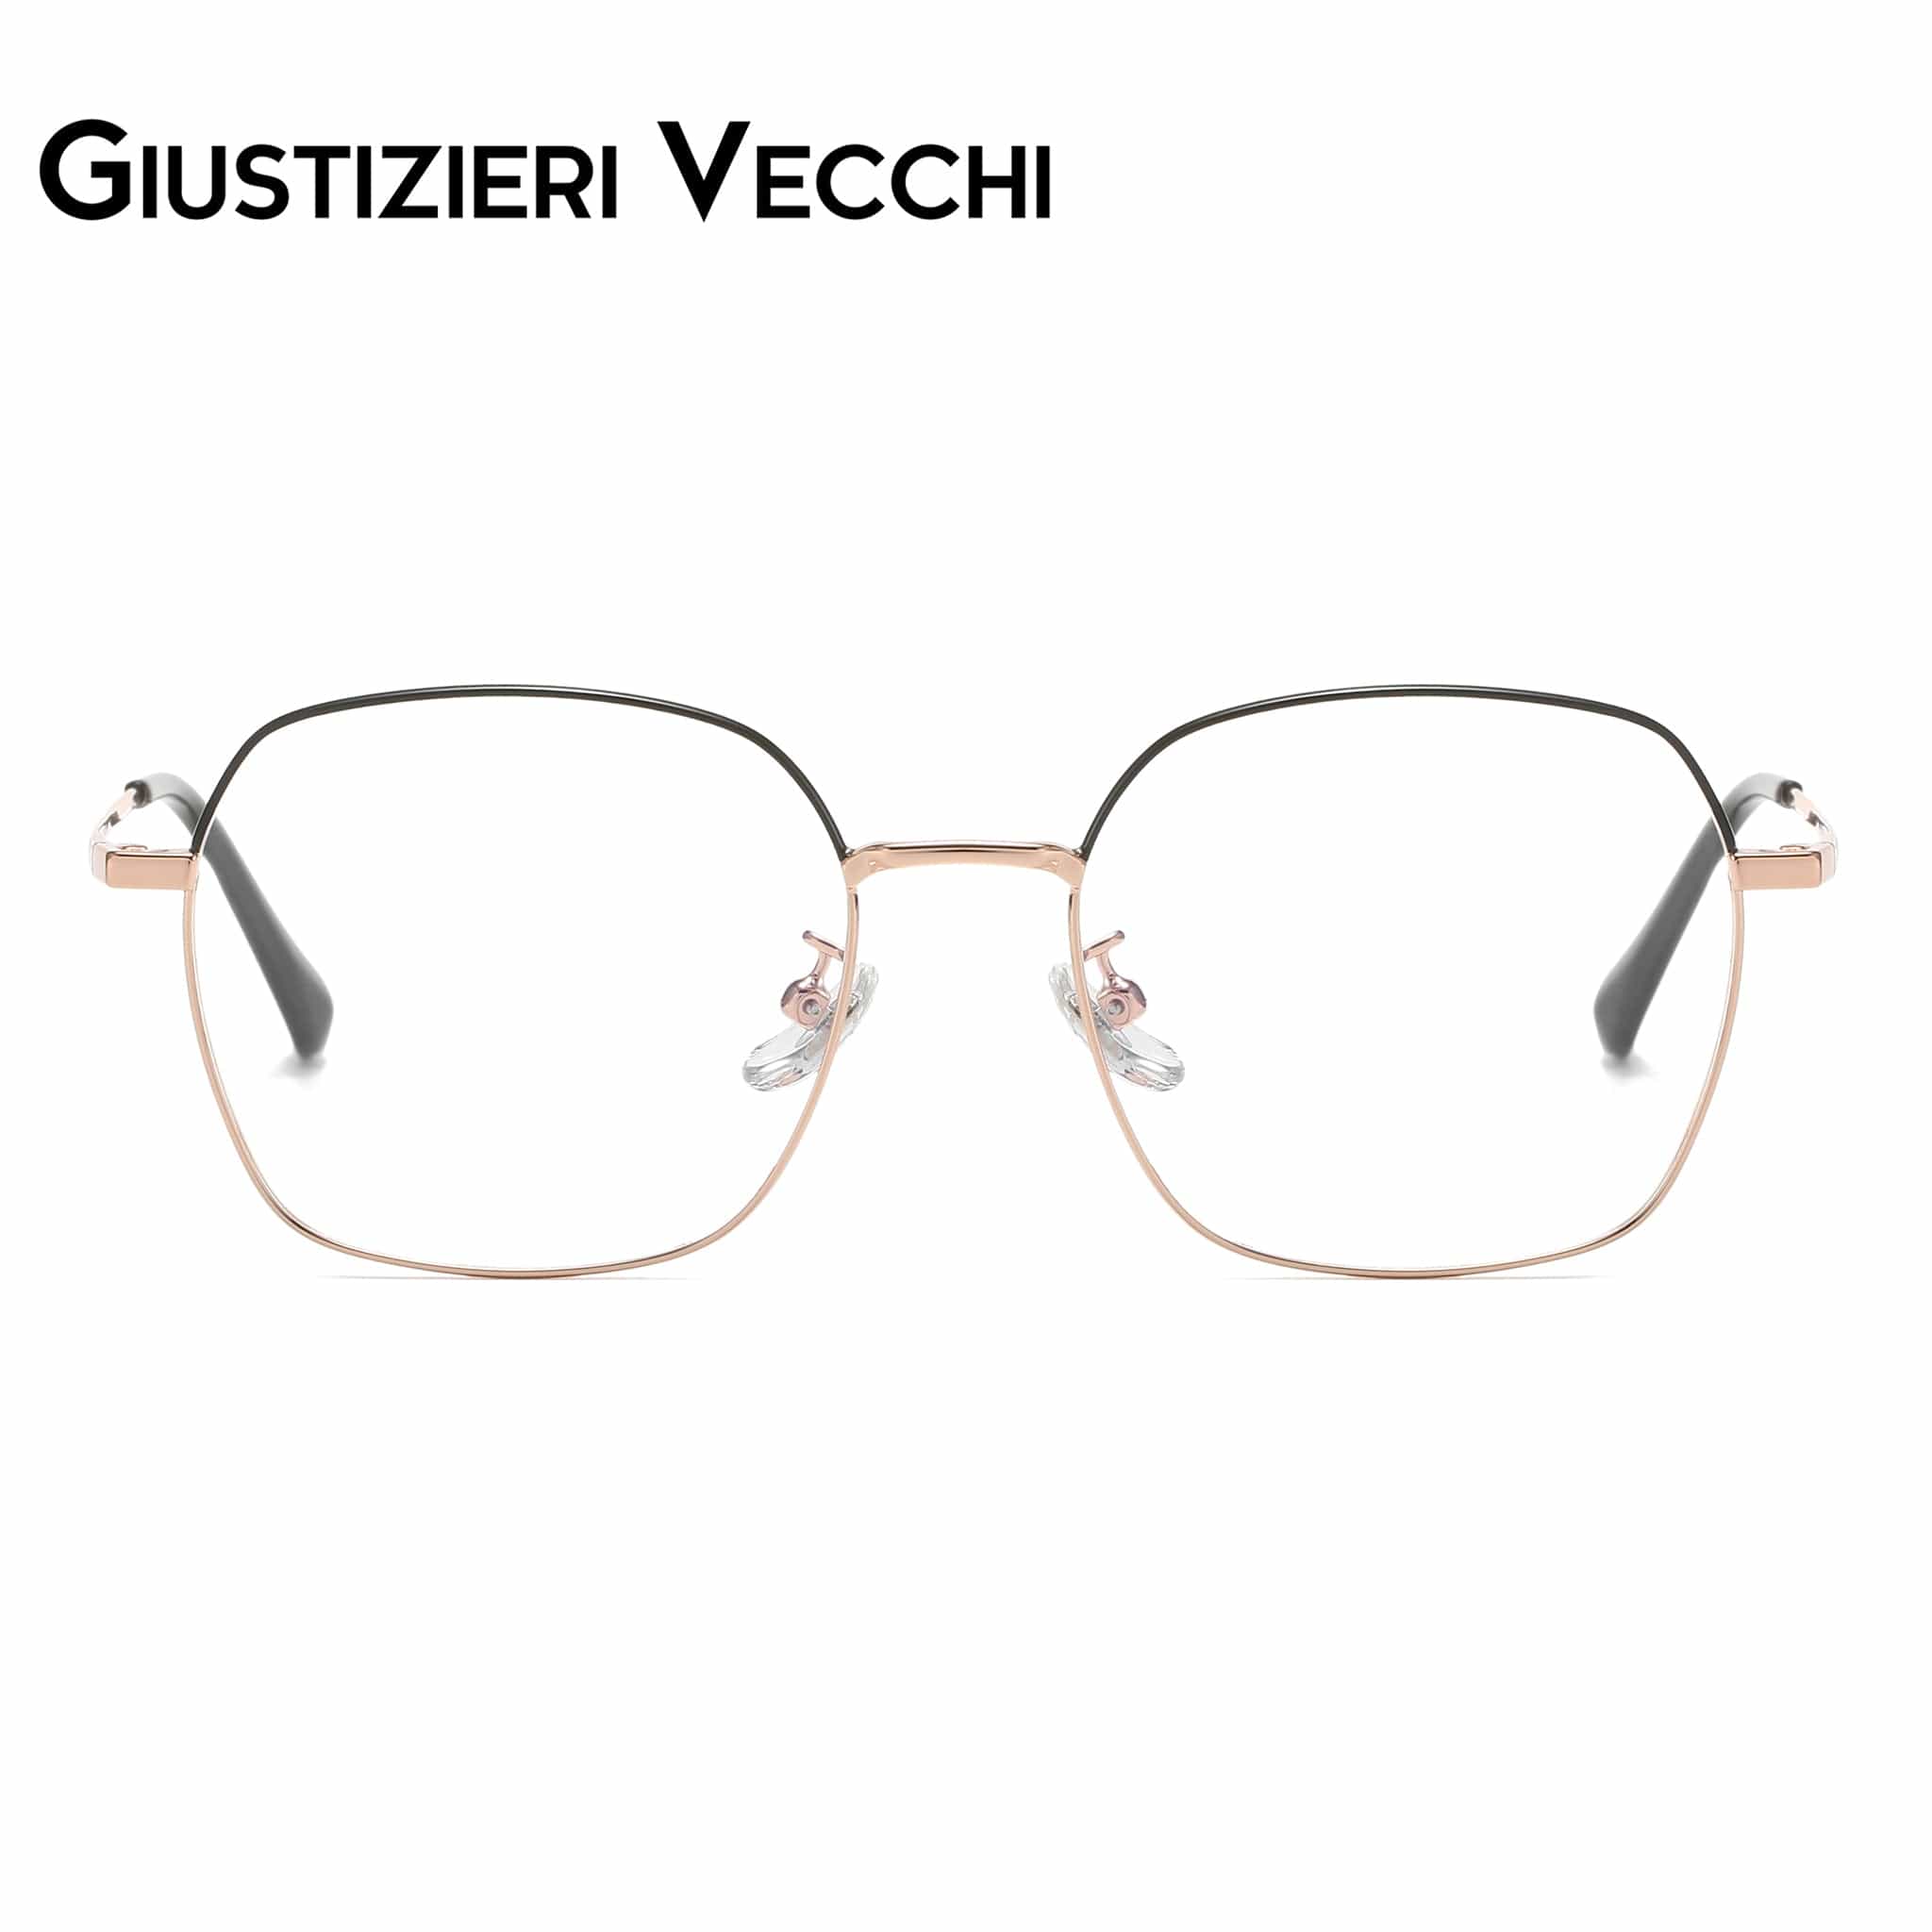 GIUSTIZIERI VECCHI Eyeglasses Small / Black with Rose Gold Chill Mist Uno